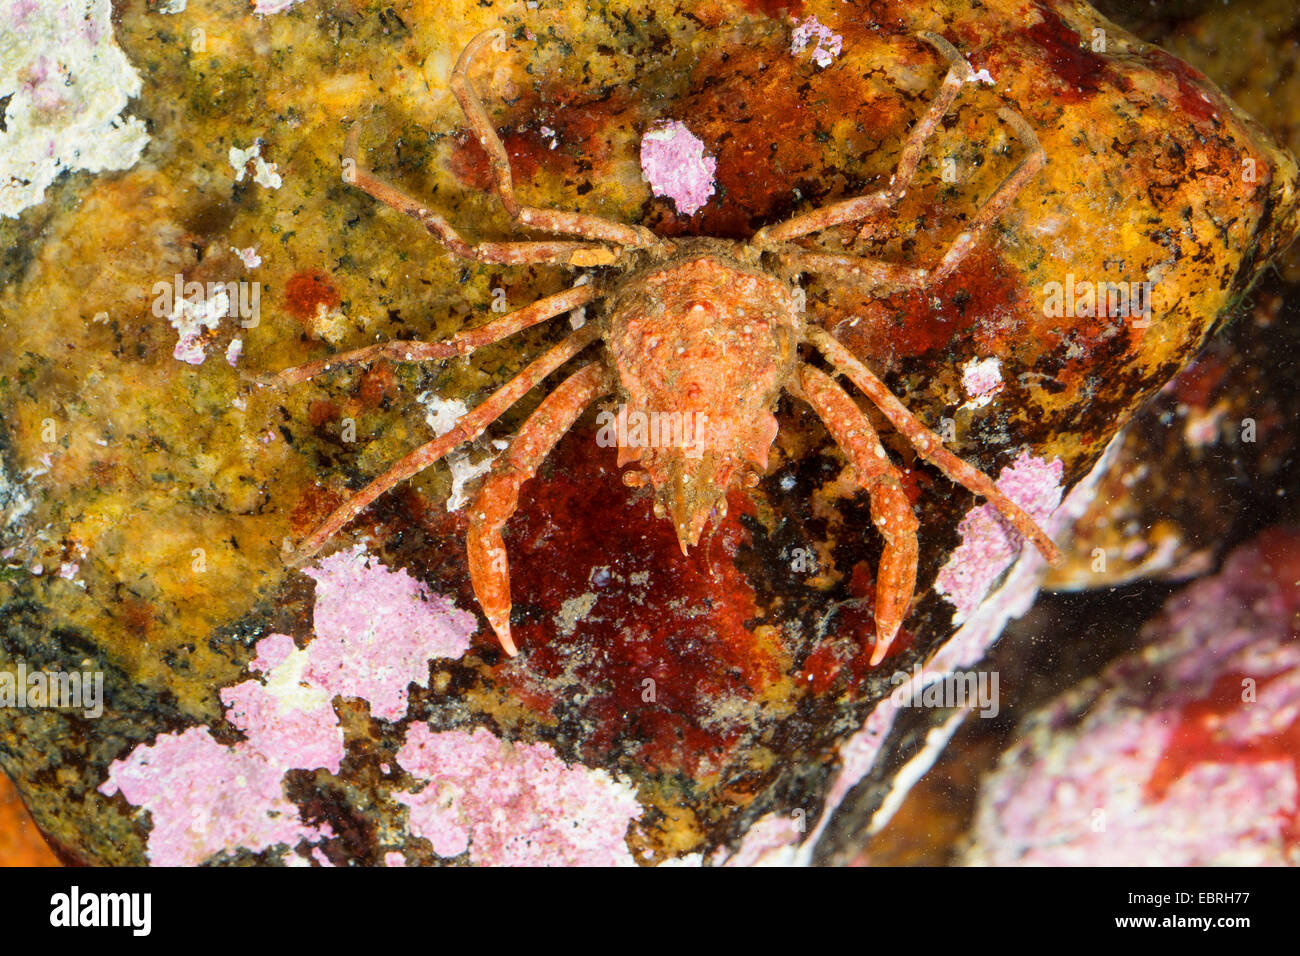 Crabe Lyre arctique sous contrat, crabe, araignée crabe, araignée de mer (Hyas coarctatus, Hyas serratus), vue du dessus Banque D'Images